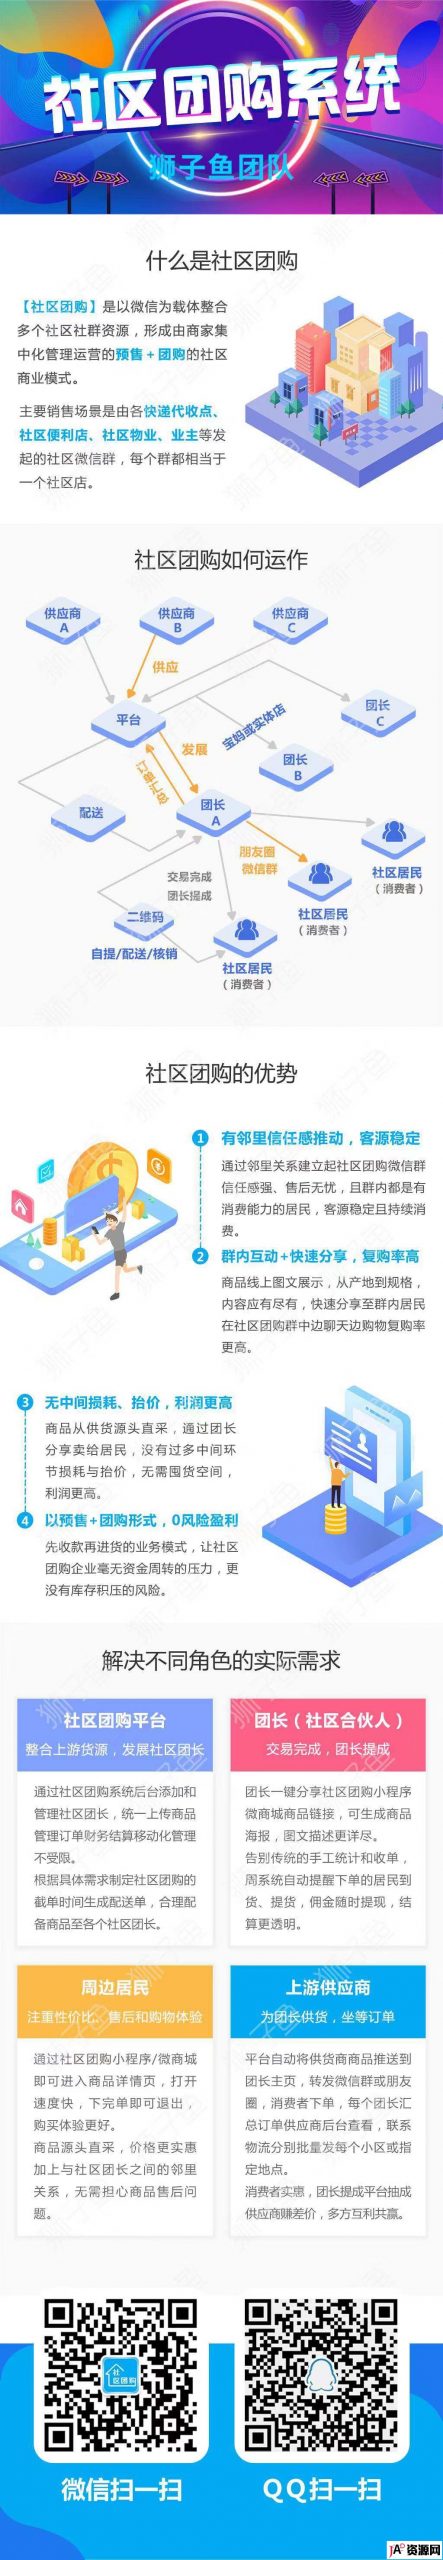 微信小程序]狮子鱼社区团购V12.8.2增供应商手机端管理 小程序 第1张